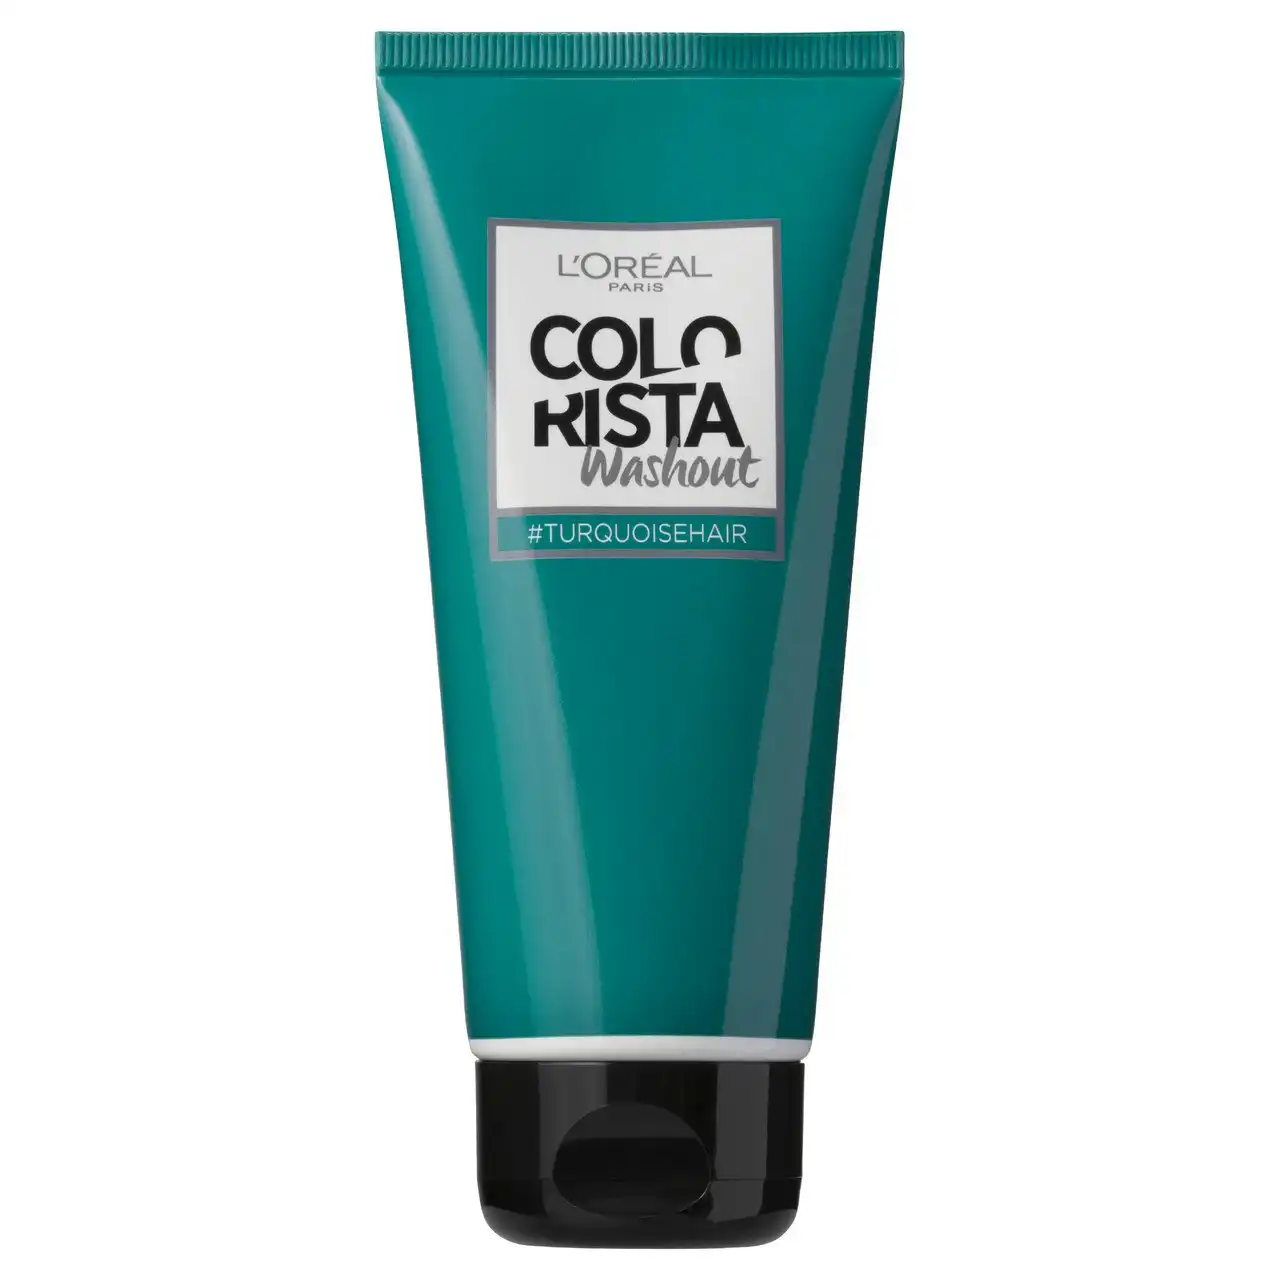 L'Oreal Paris Colorista Washout Turquoise Hair (Semi-Permanent Hair Colour)